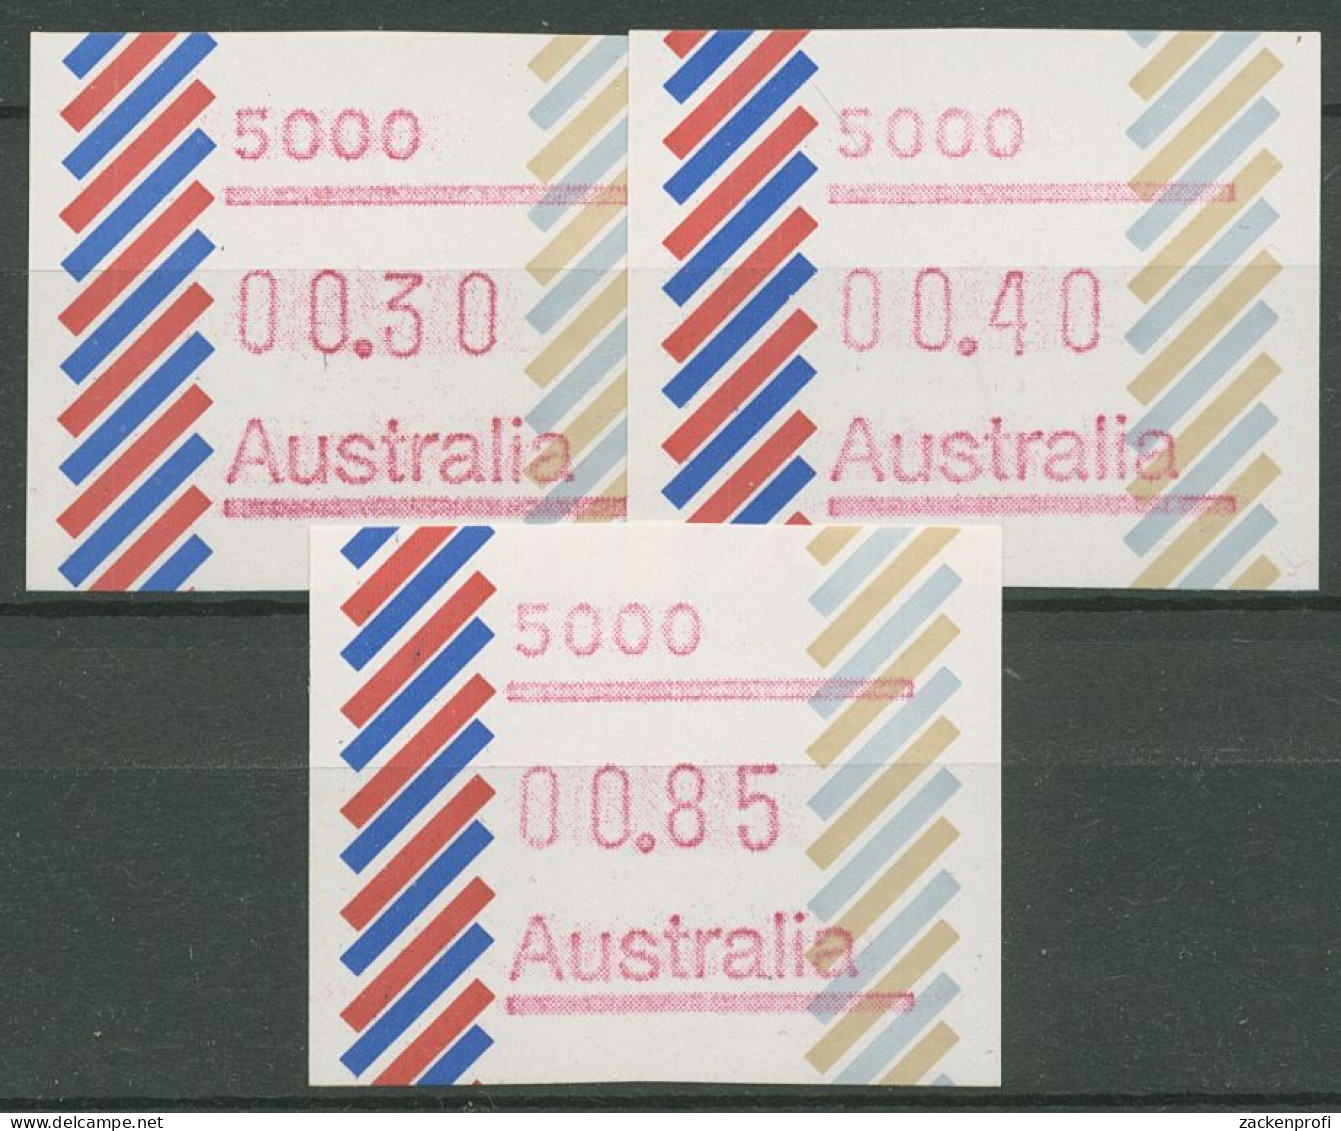 Australien 1984 Balken Tastensatz Automatenmarke 1 S1, 5000 Postfrisch - Vignette [ATM]